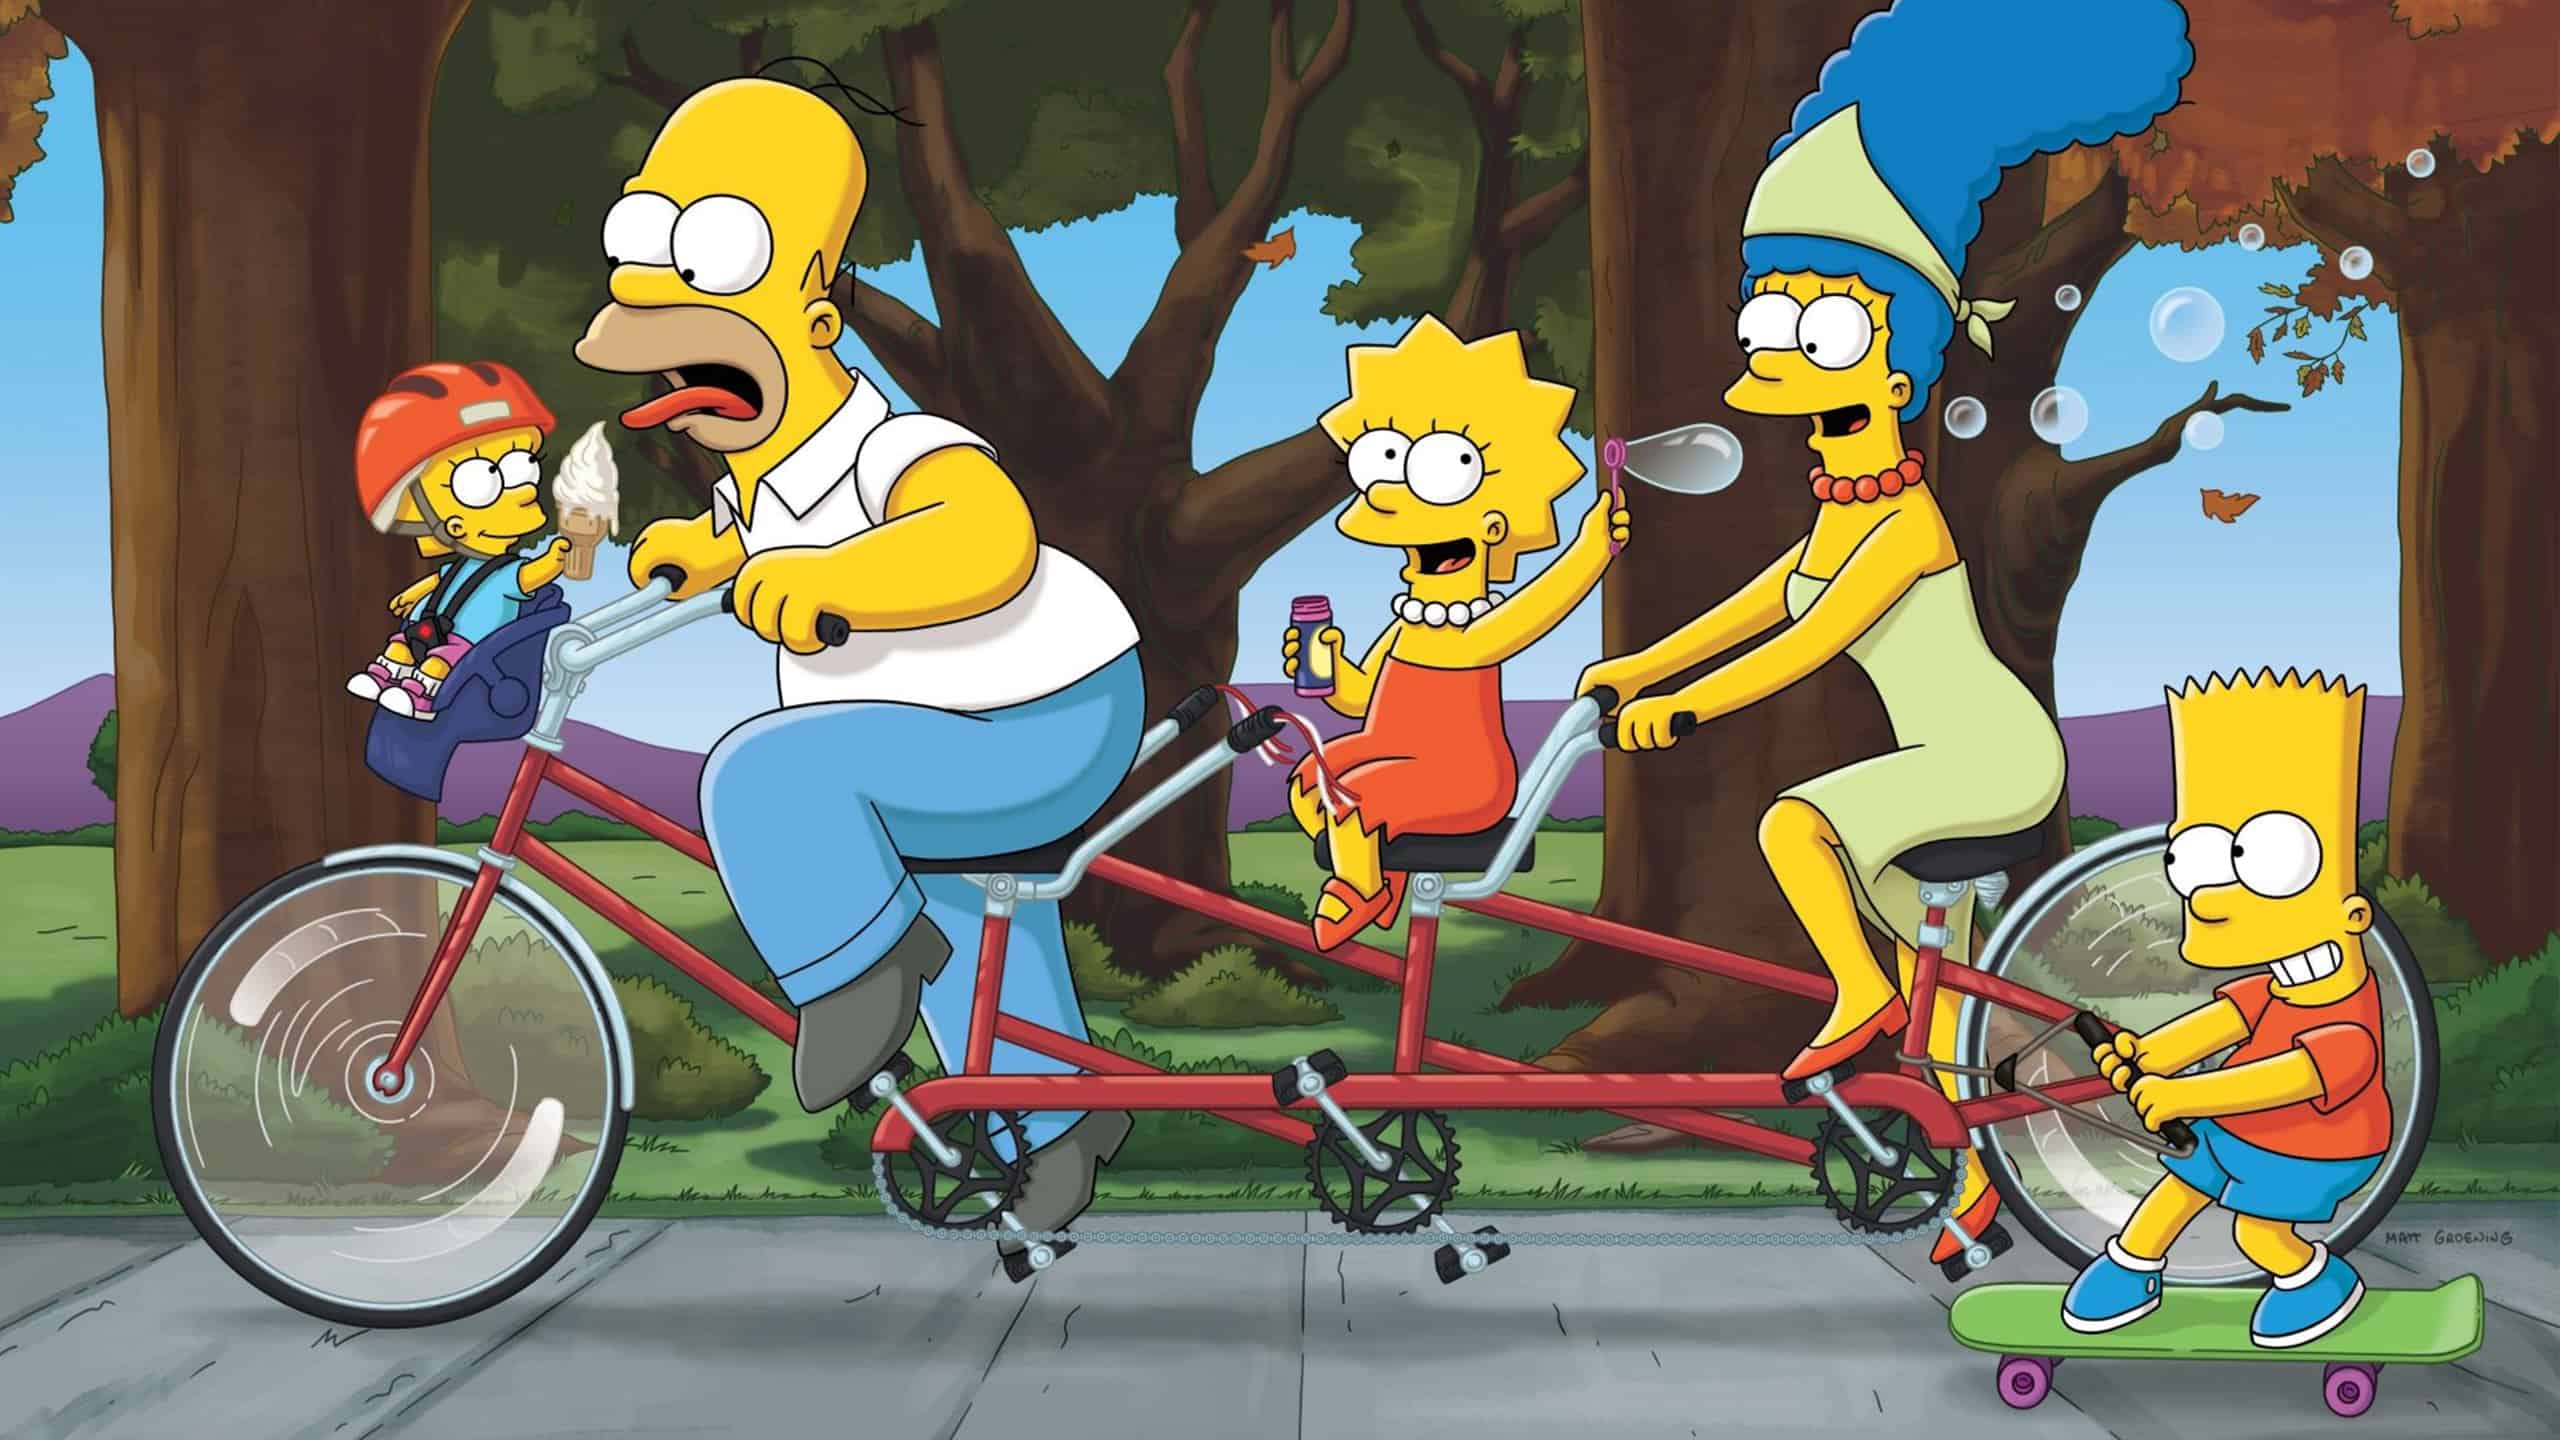 La famille Simpson fait du vélo avec un tandem. Bart est accroché à l’arrière sur son skate et maggie fait rouler Homer avec une glaçe à l’avant.